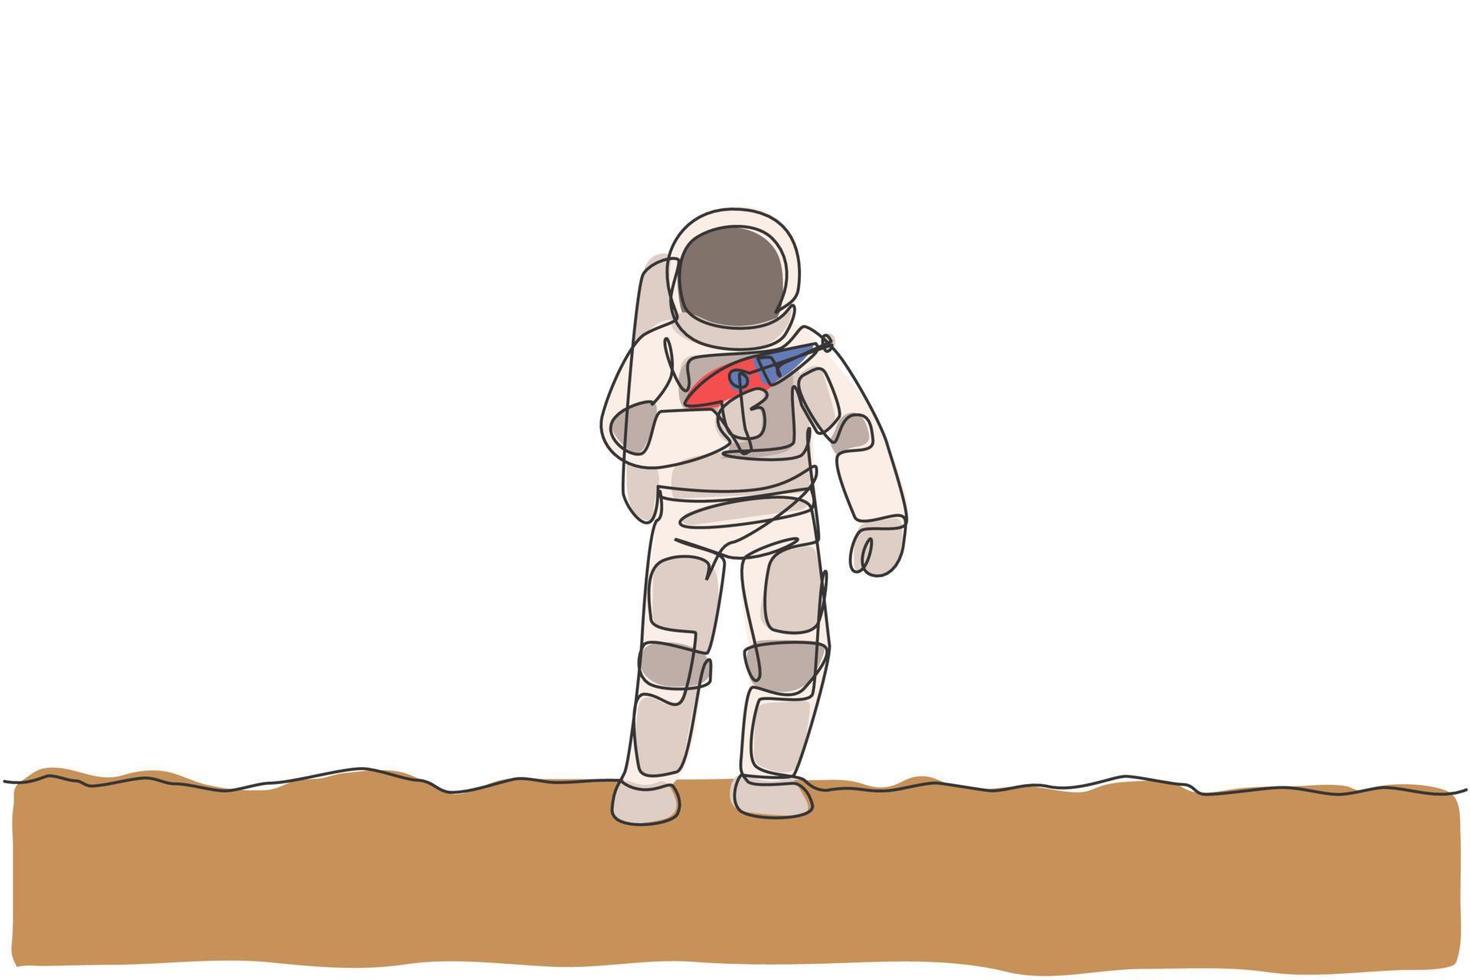 un seul dessin au trait d'un jeune astronaute tenant un pistolet laser spatial, préparez-vous à la guerre dans l'illustration graphique vectorielle de la surface de la lune. concept d'espace lointain de cosmonaute. conception de dessin de ligne continue moderne vecteur